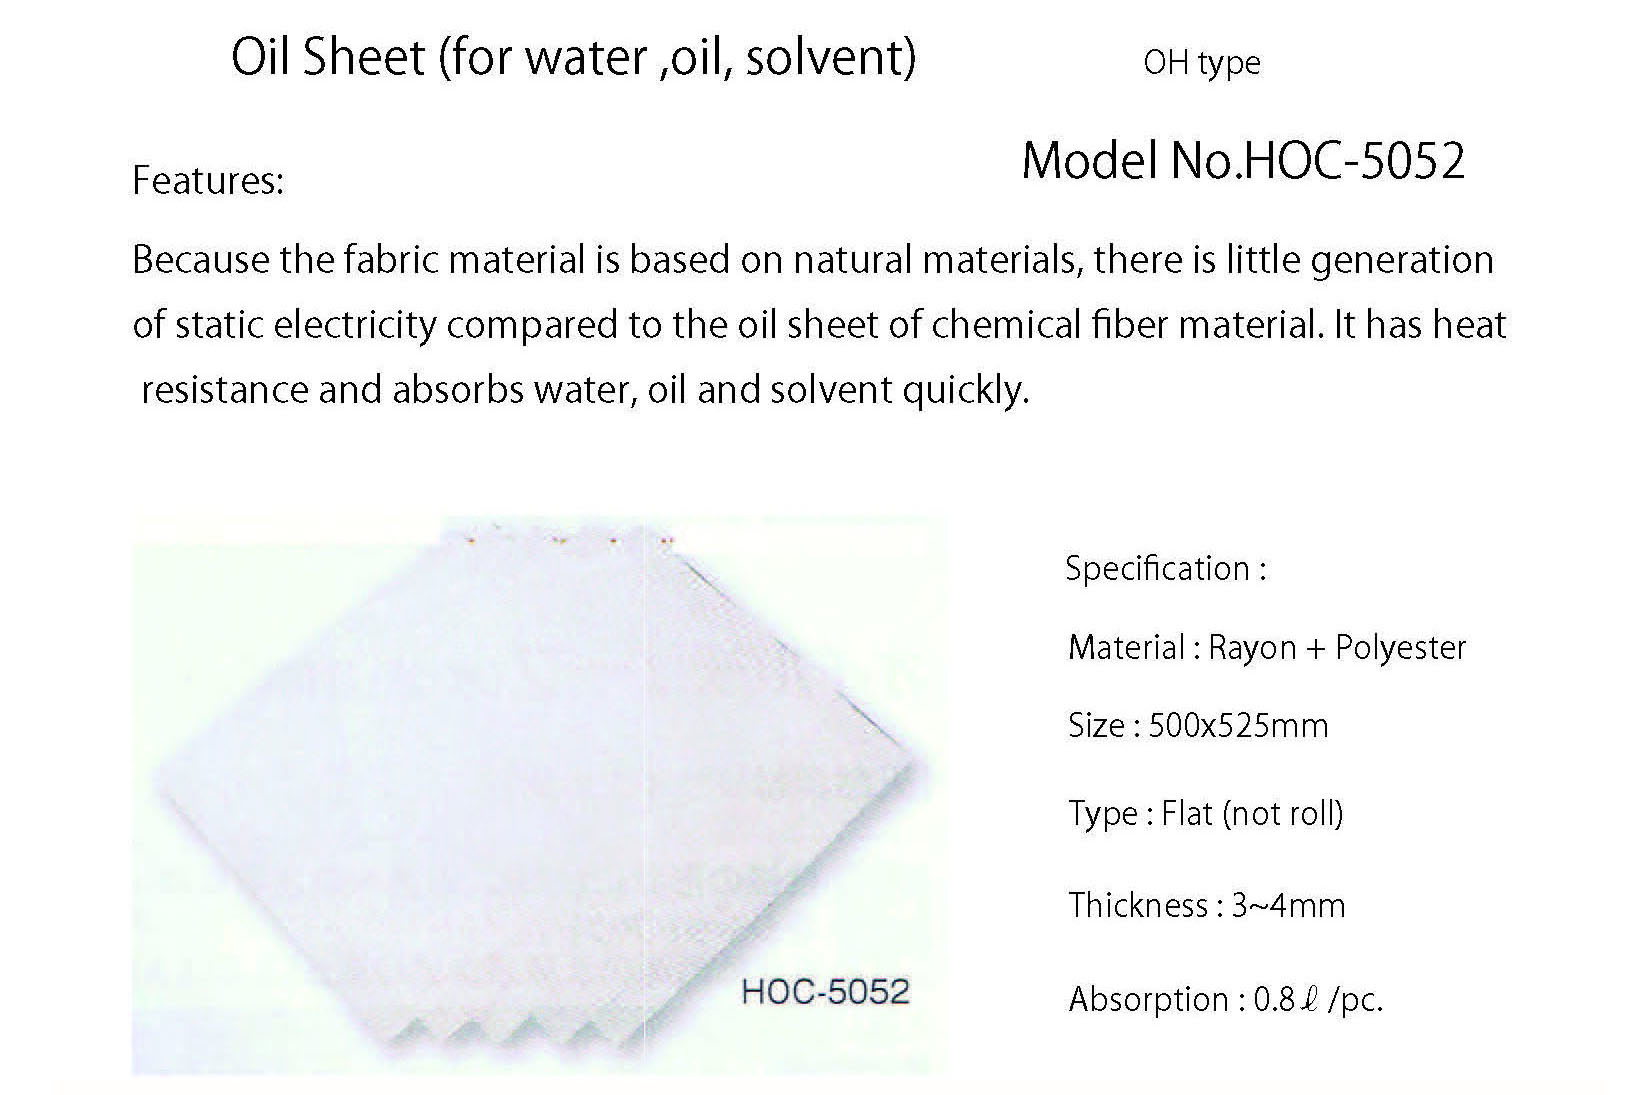 HOC-5052 Oil sheet